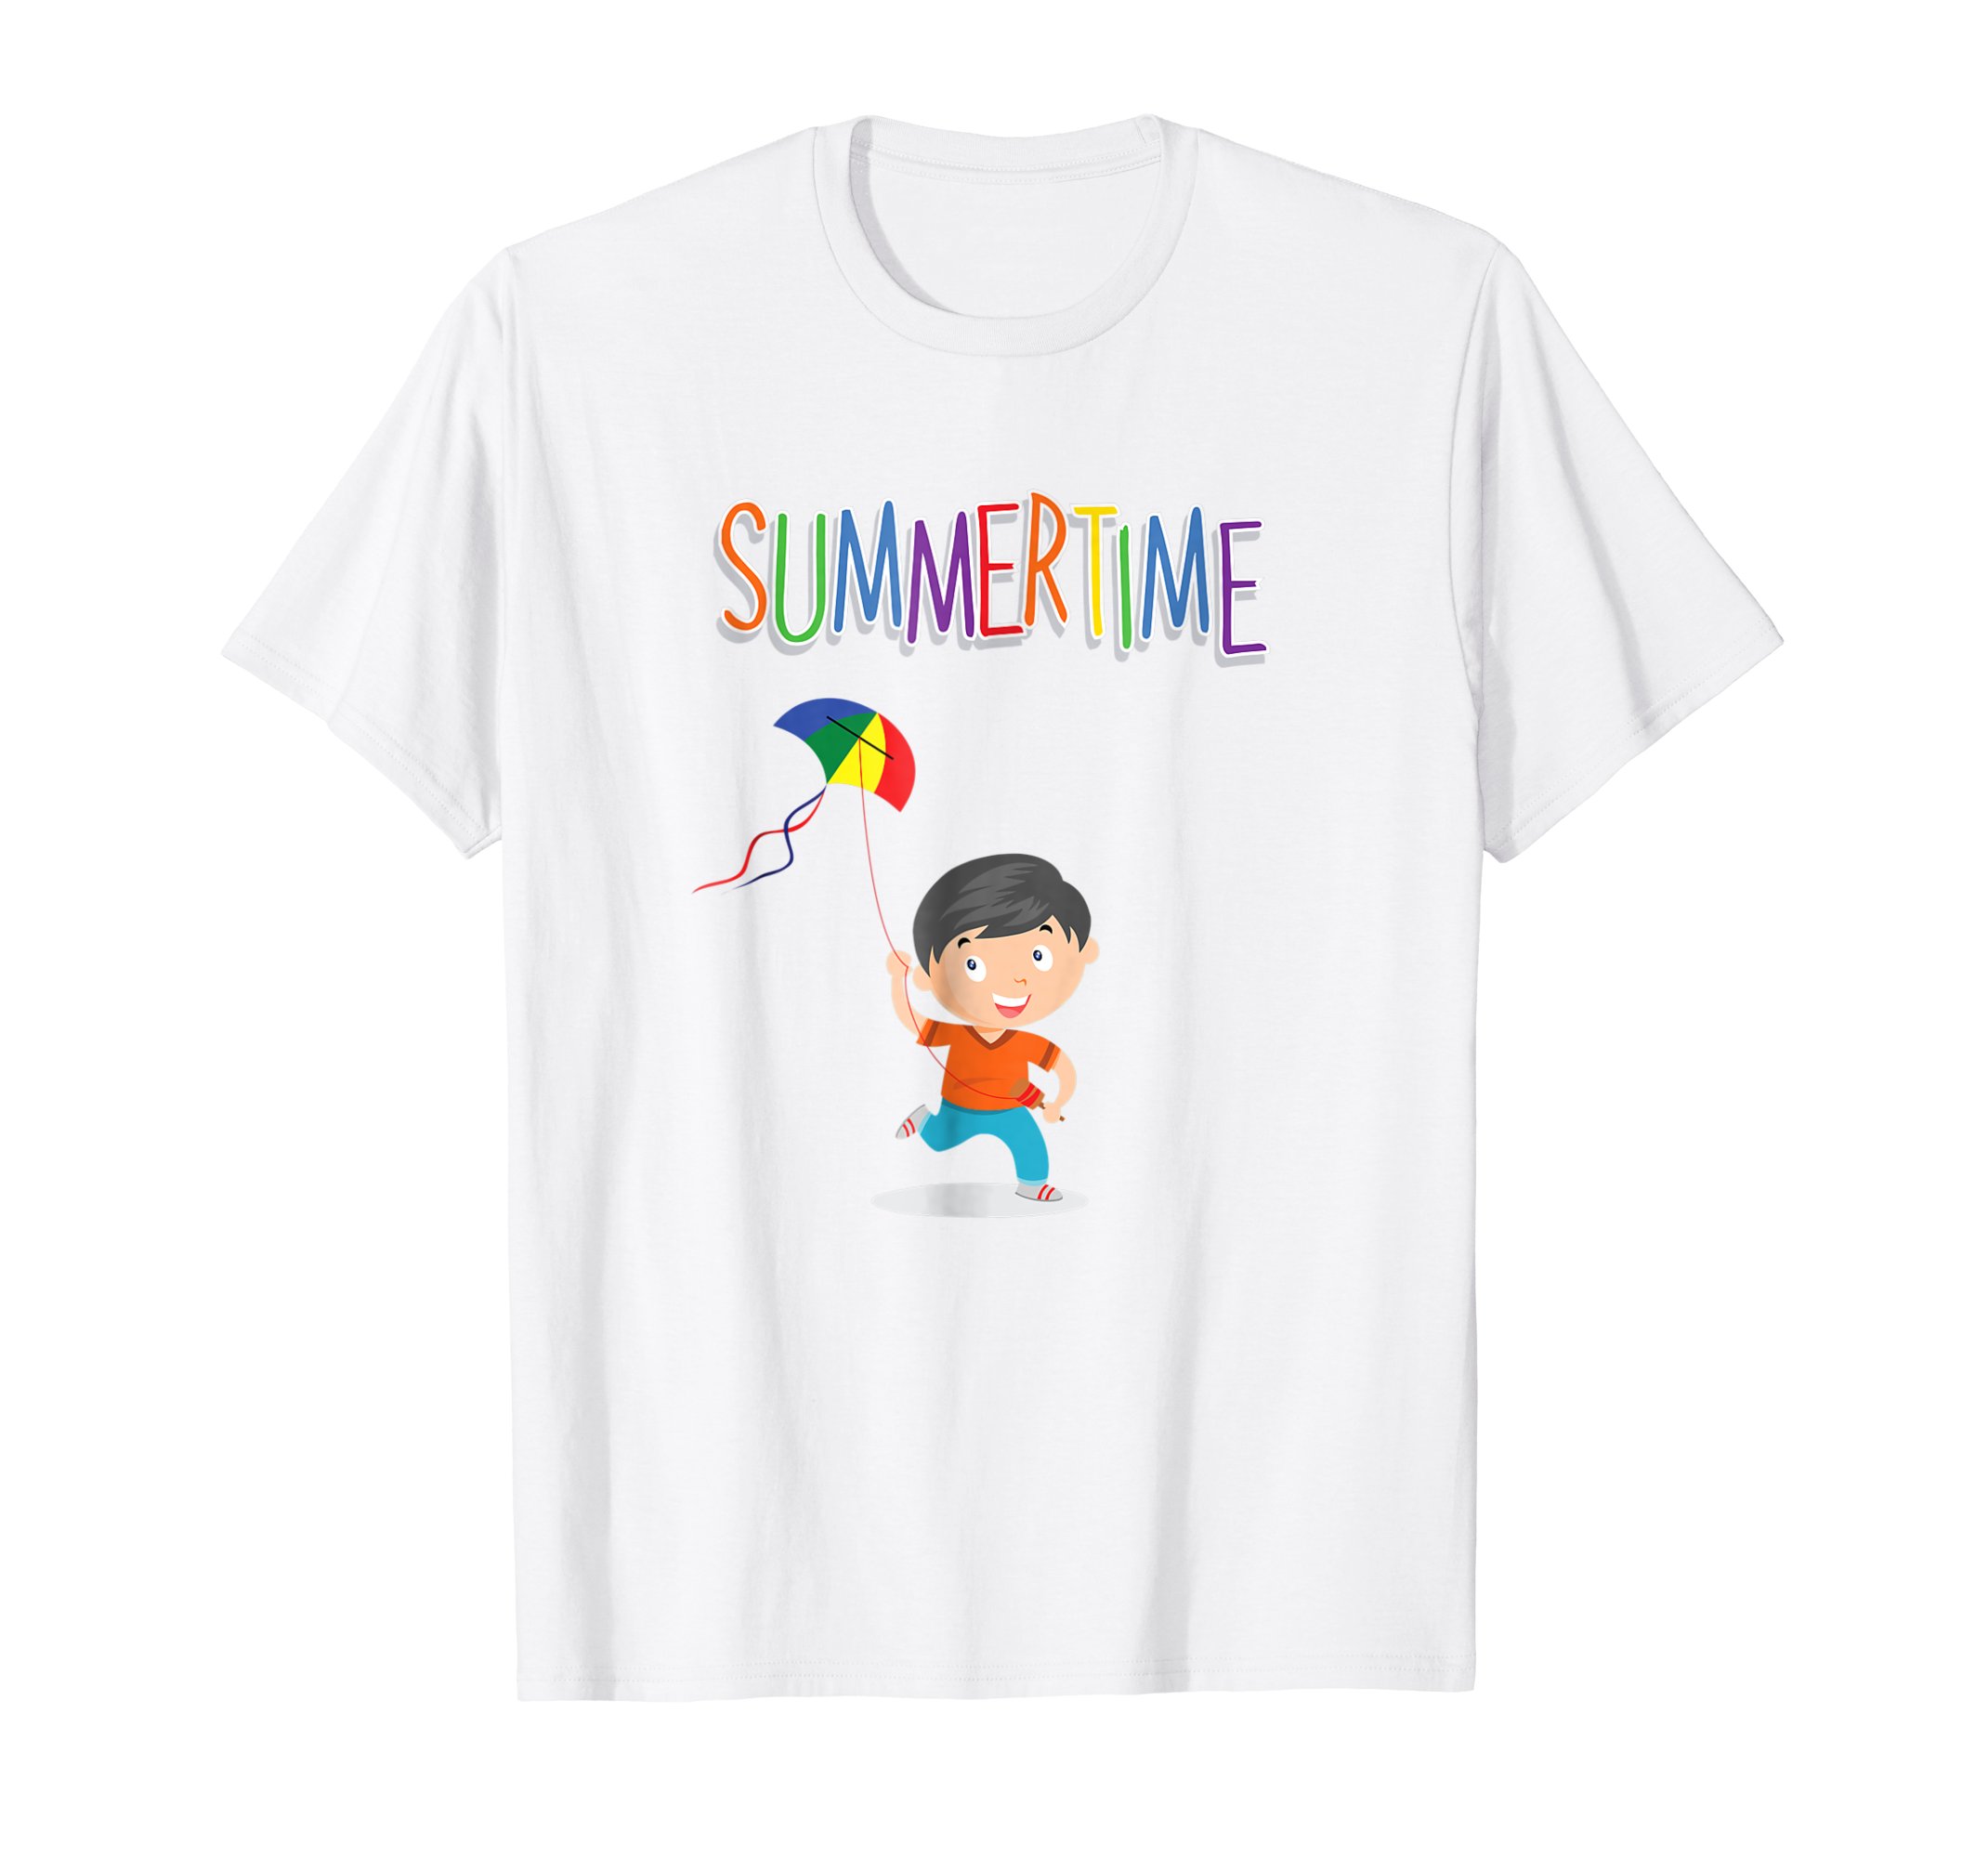 Brandon Charnell Summertime Kite Boys Girls Kids T-Shirt Summer Kites